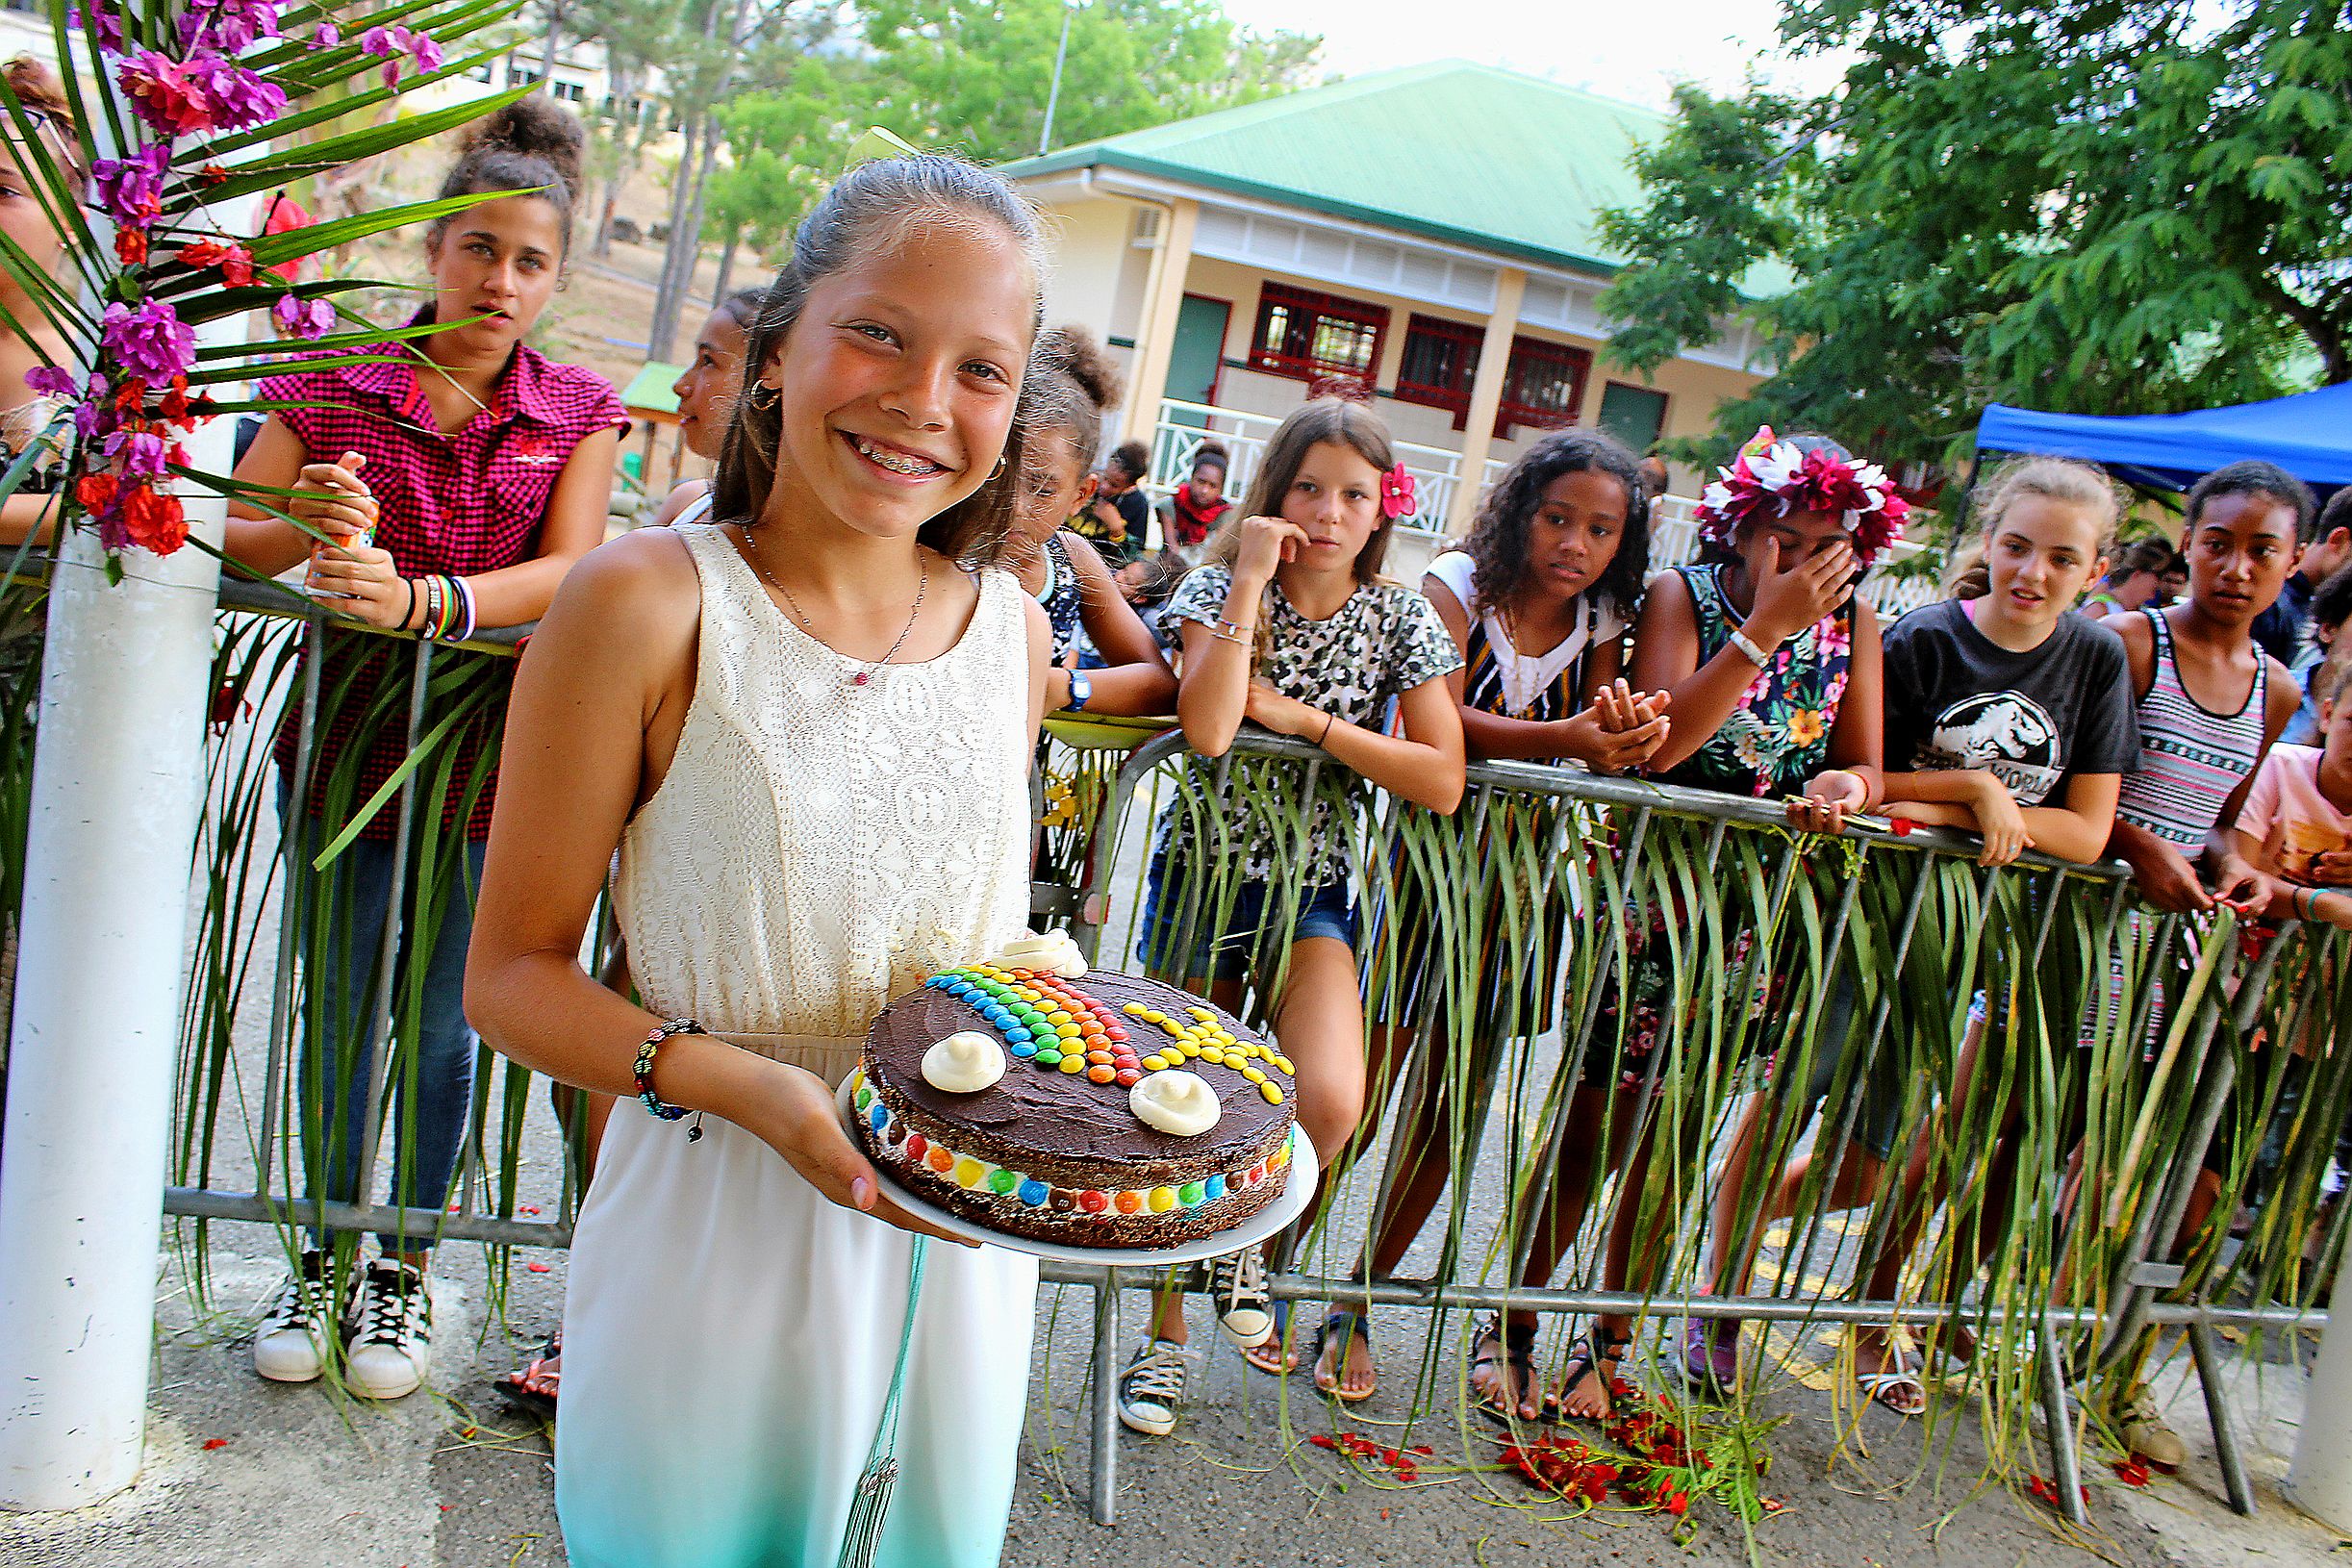 Le concours culinaire spécial gâteau, proposé par la vie scolaire, a remporté un franc succès.